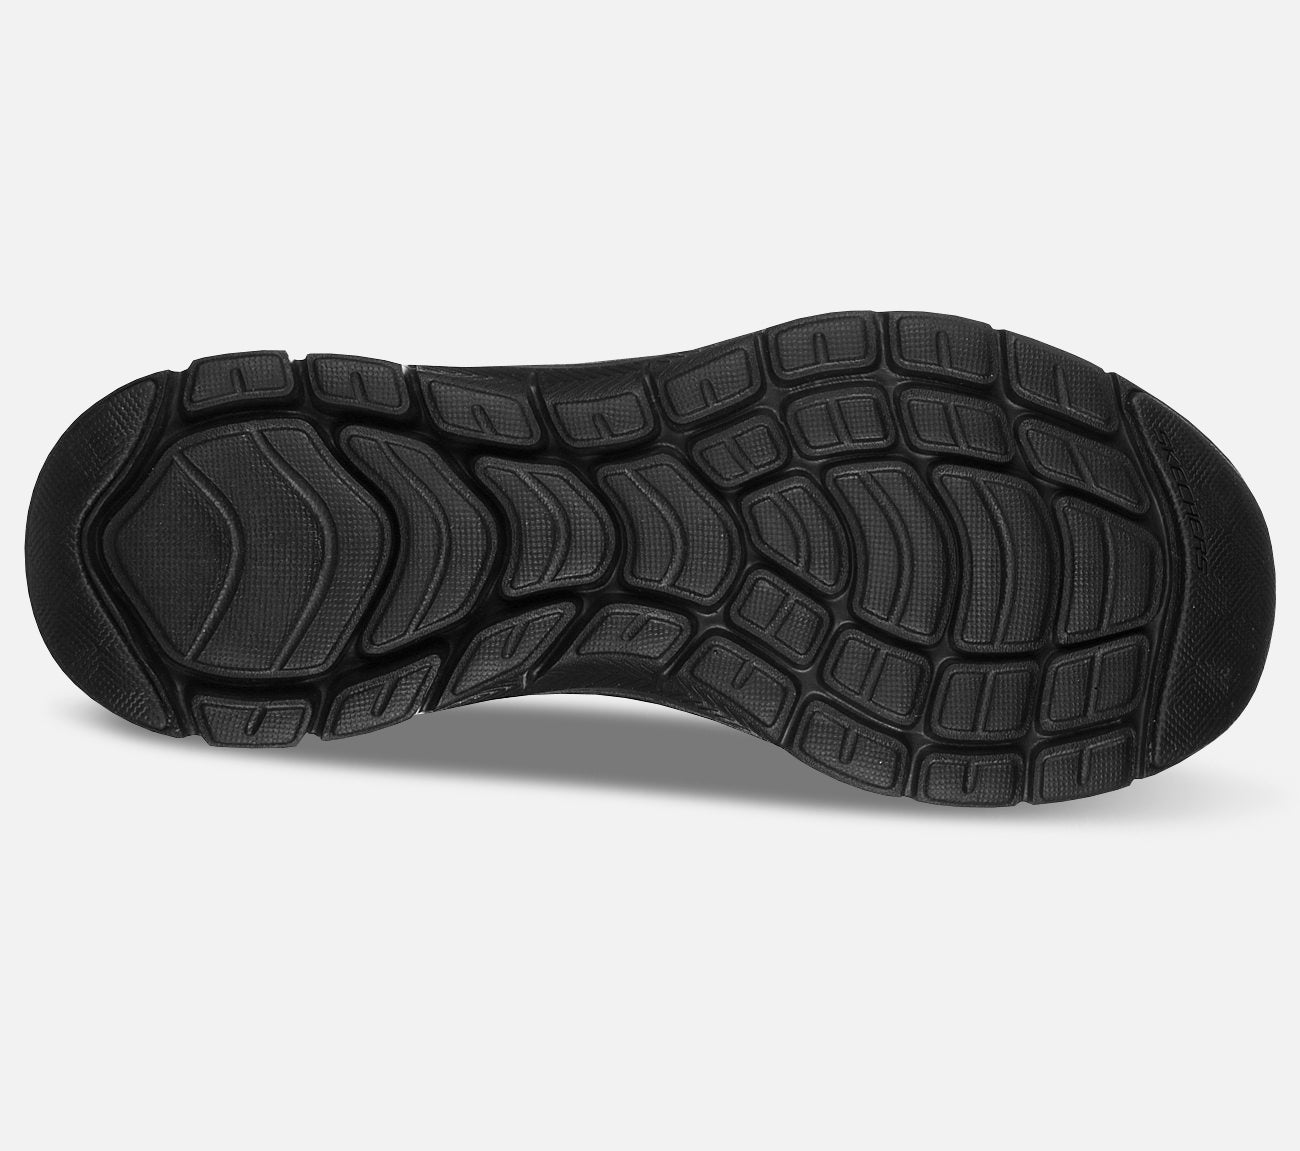 Flex Appeal 4.0 - Waterproof Shoe Skechers